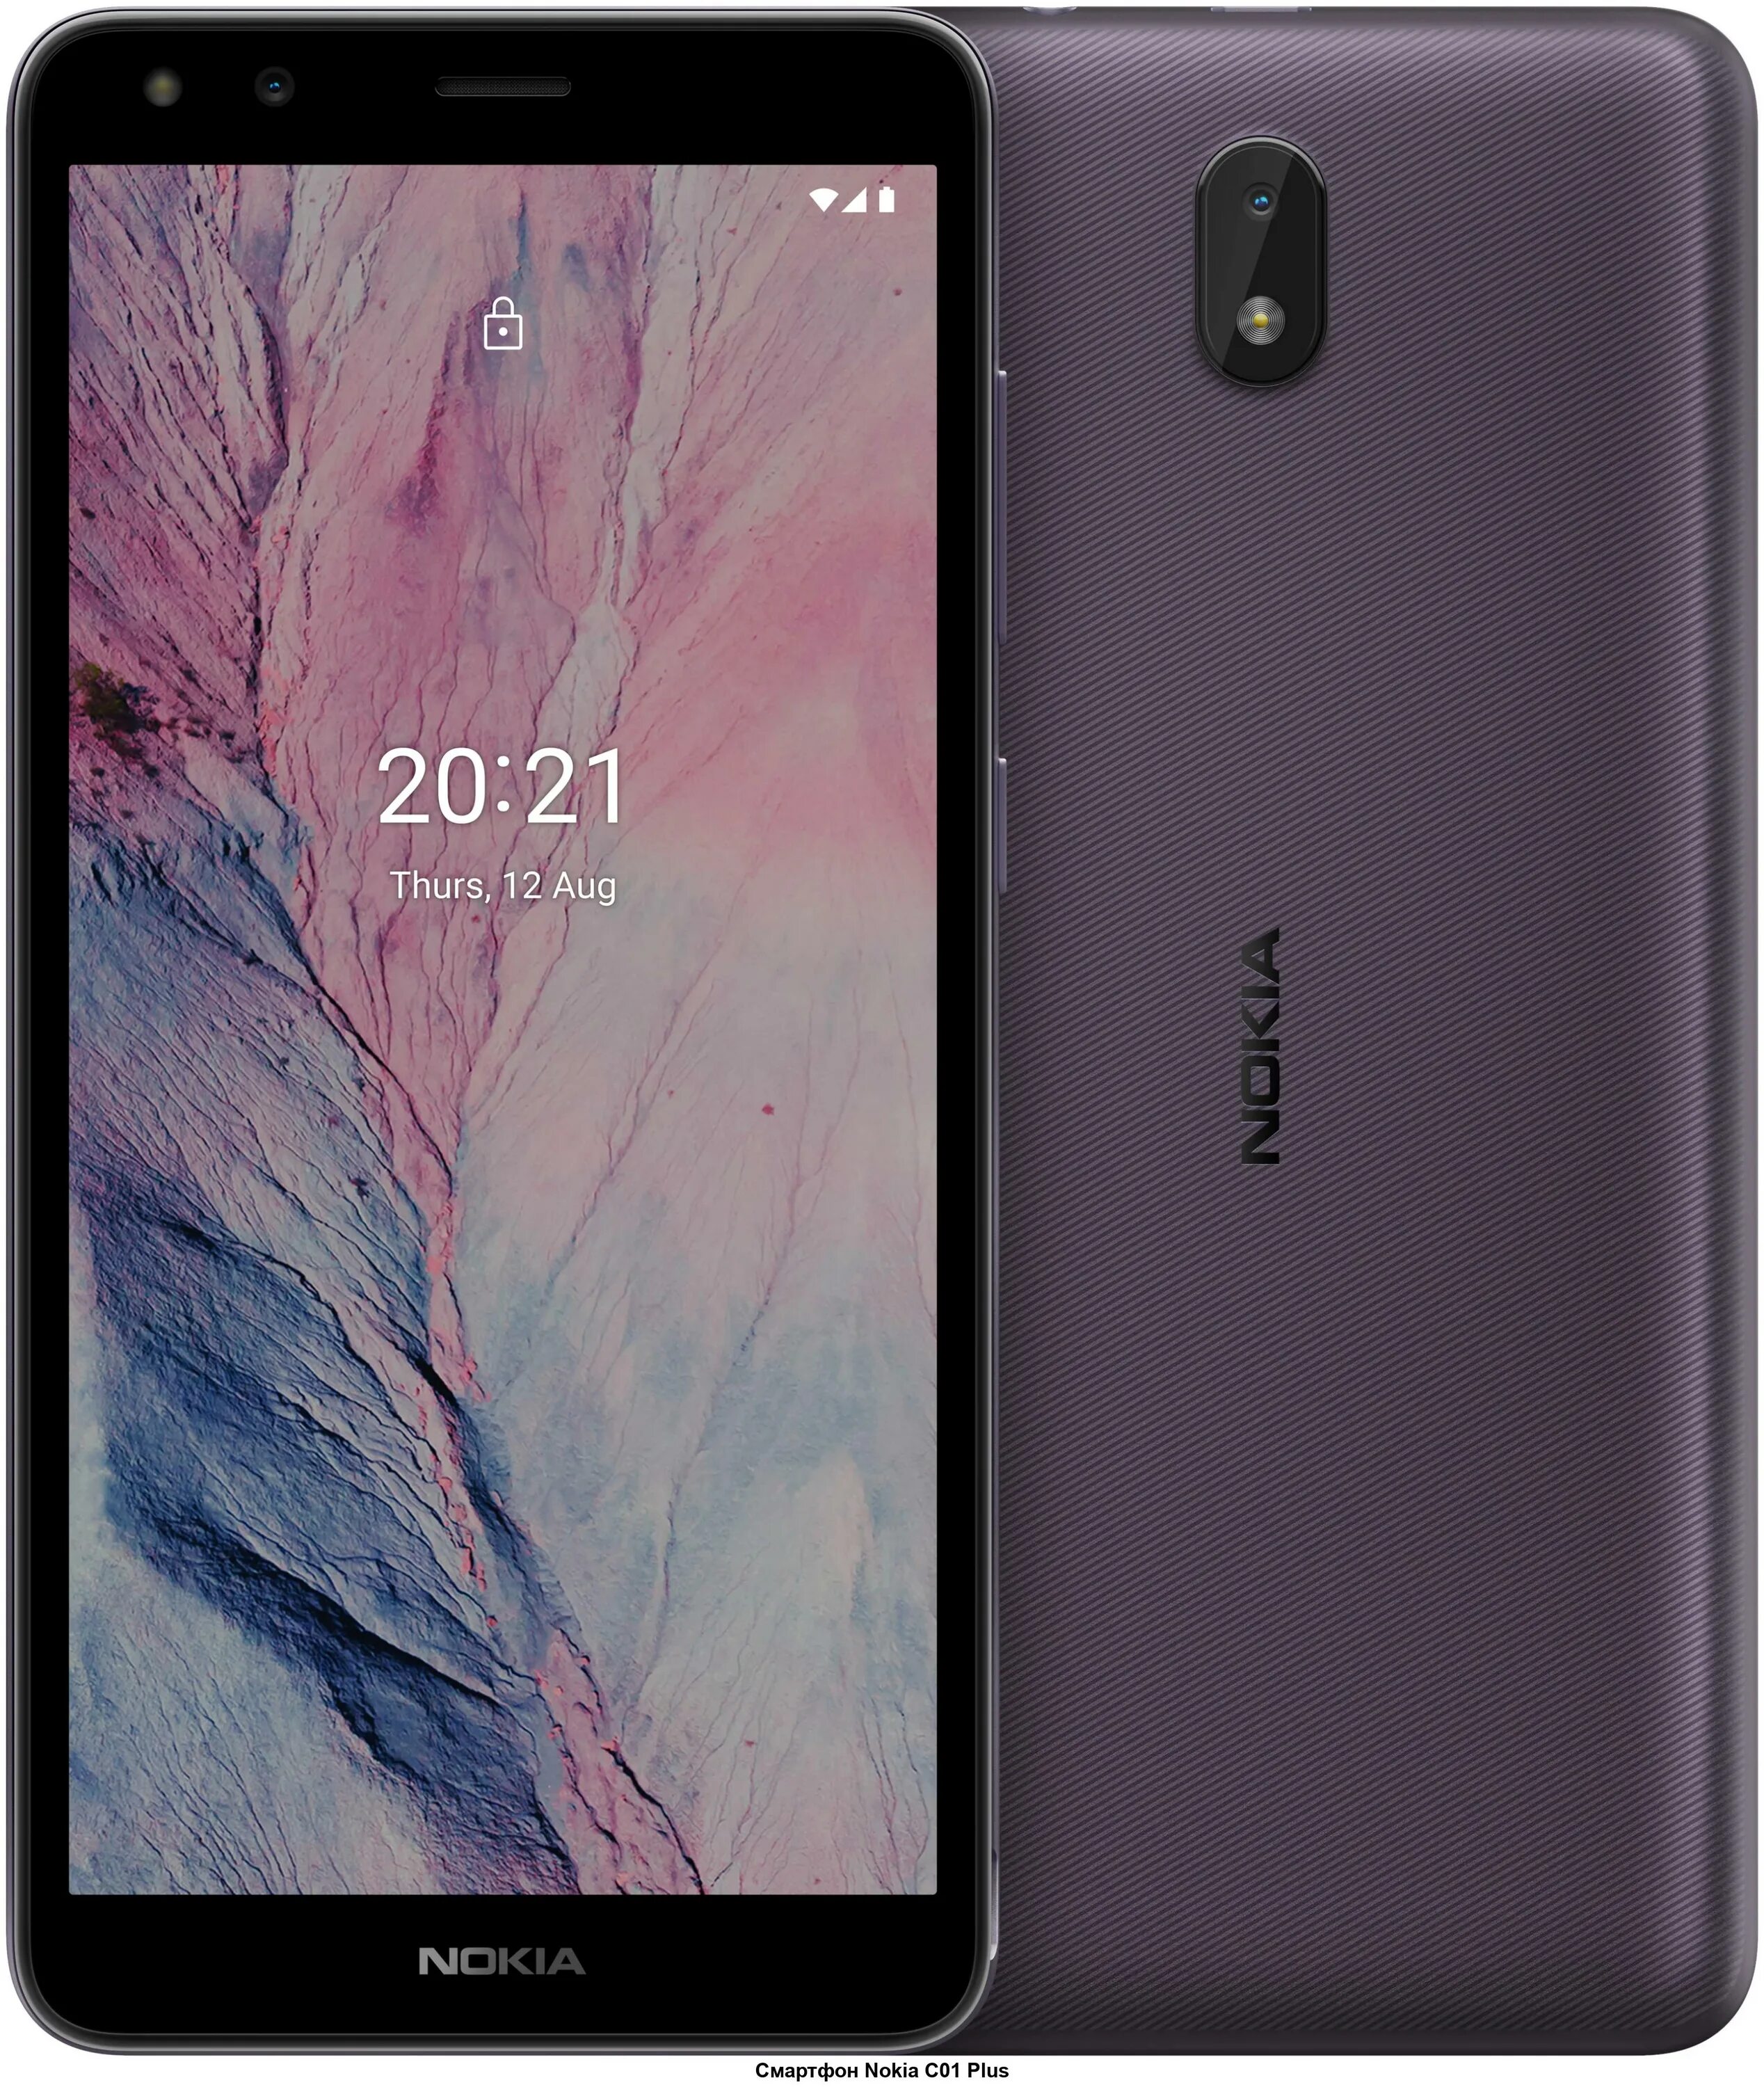 Flash dump. Смартфон Nokia c01 Plus 1+16gb. Nokia c01 Plus 1+16gb Purple. Смартфон Nokia c01 Plus Purple. Nokia c01 Plus ta-1383.